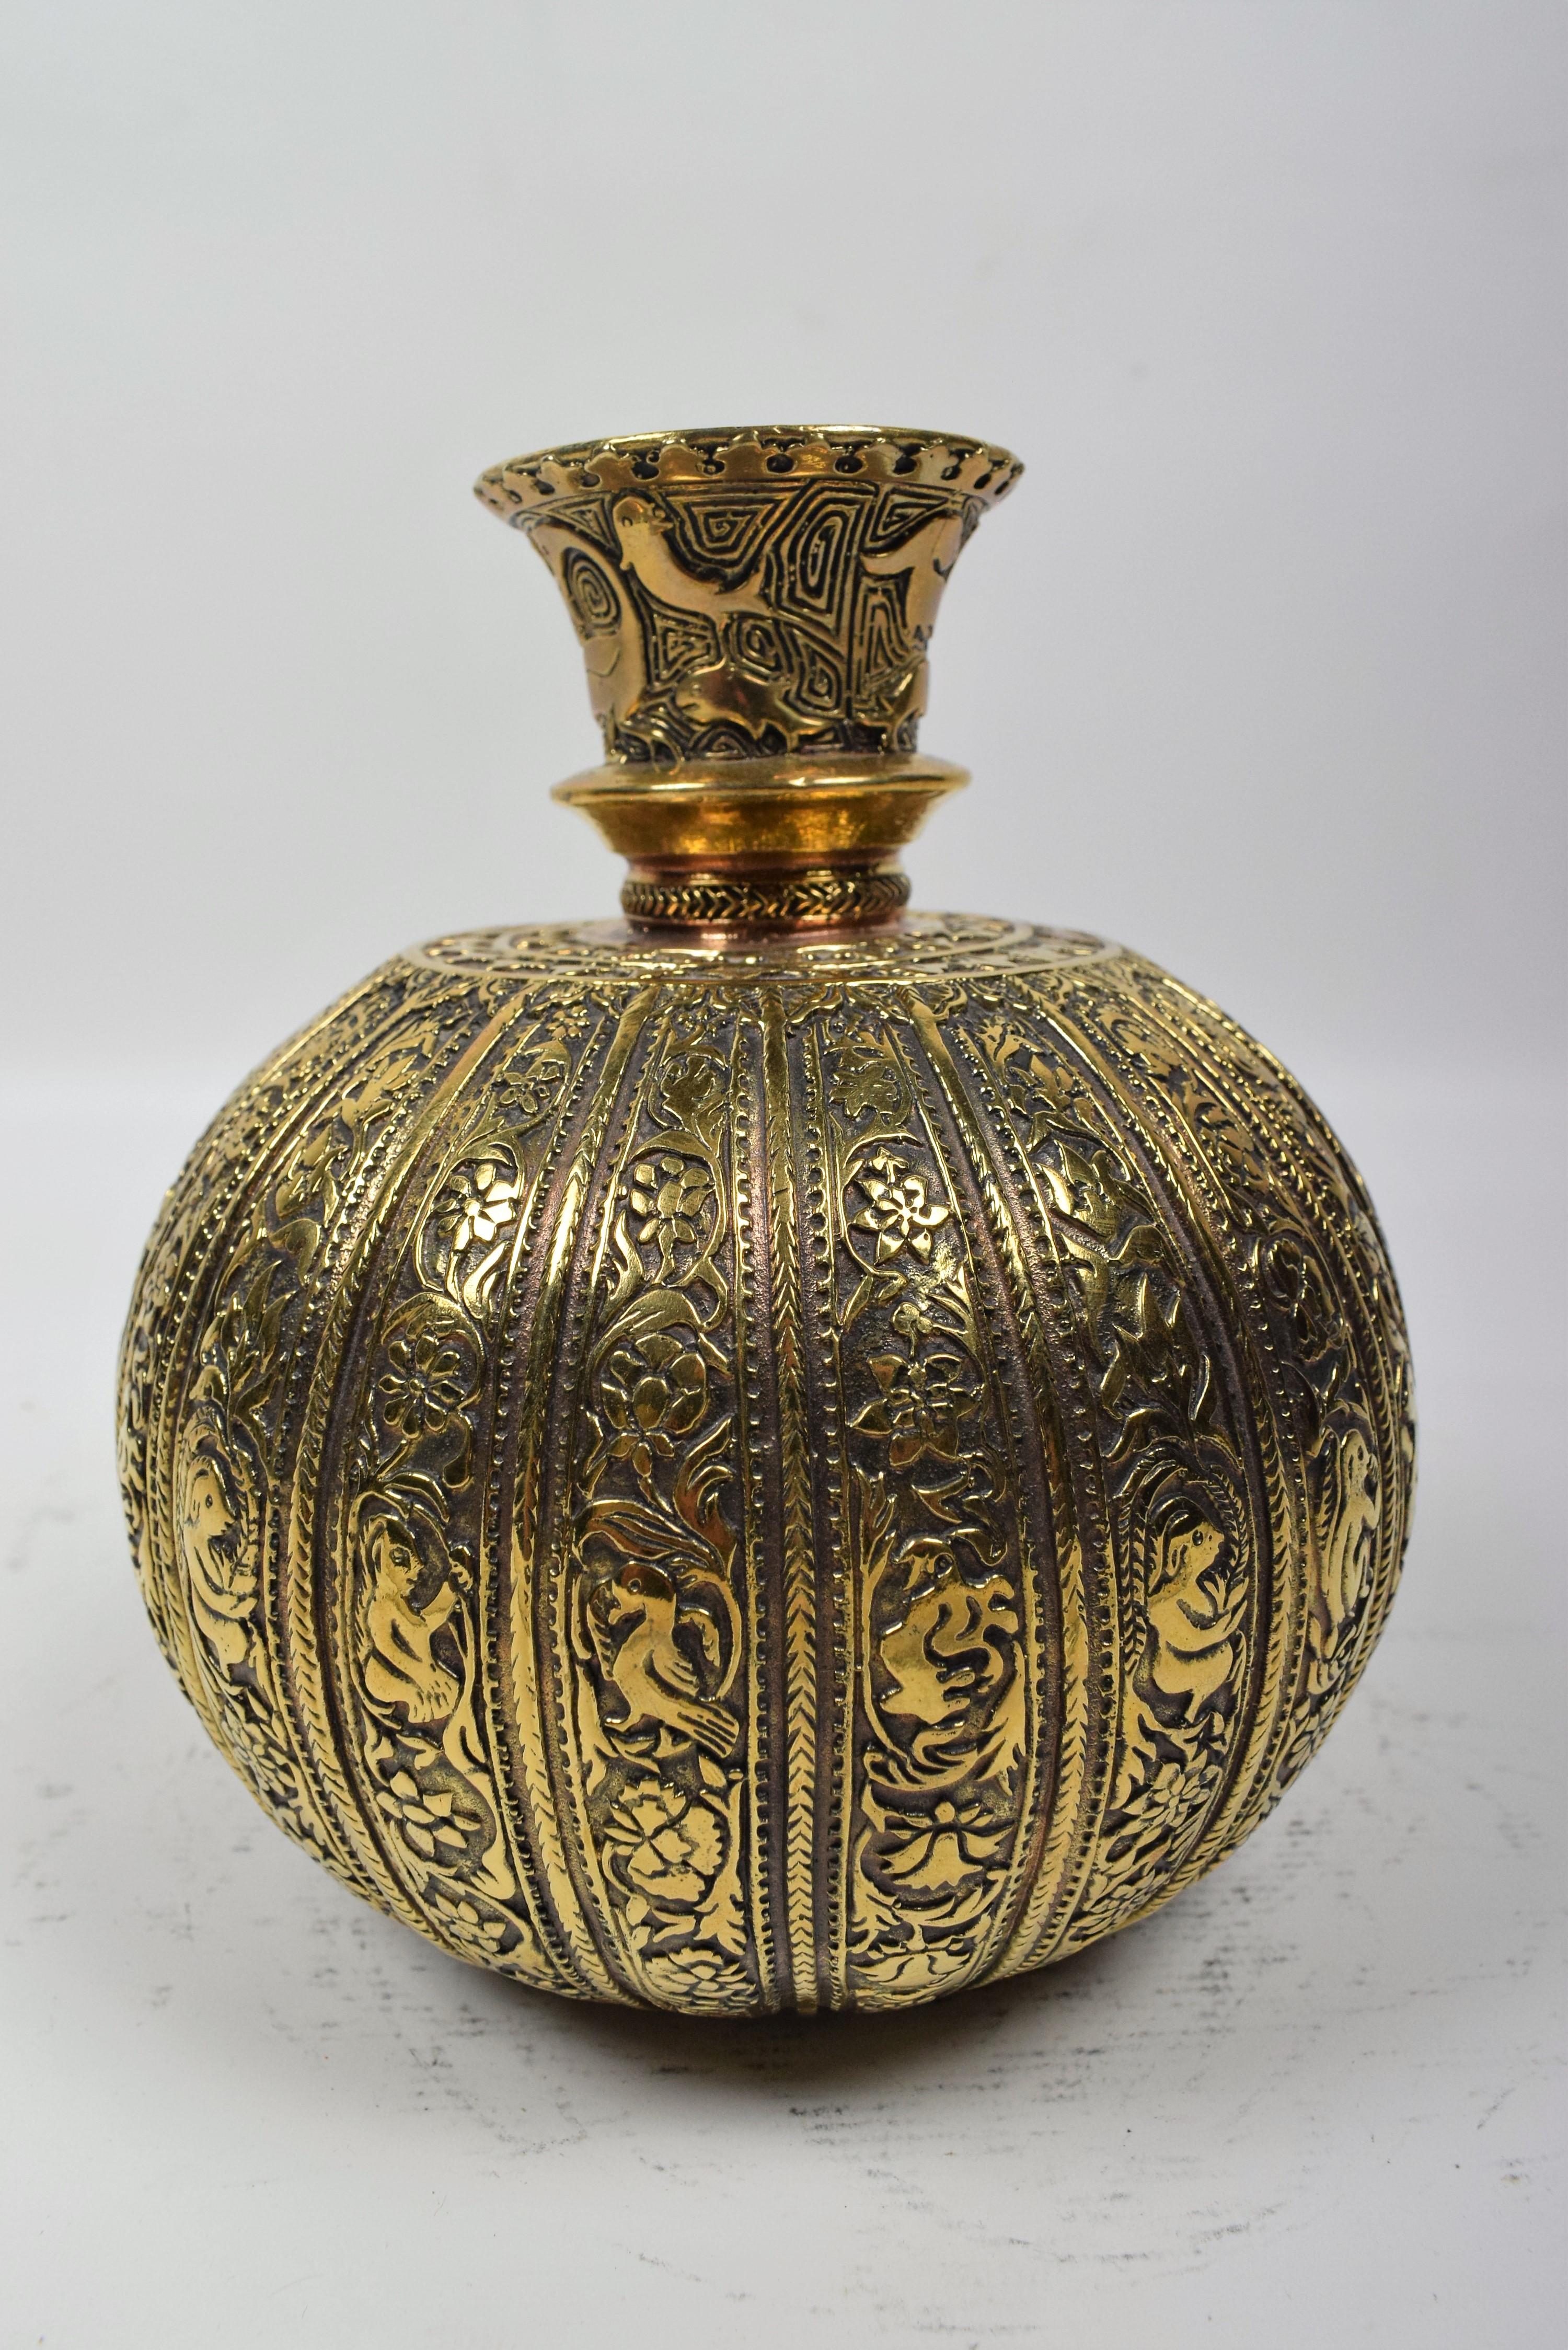 Die Mughal-Hookah aus Messing verfügt über einen wunderschön gravierten Messingboden, der mit komplizierten floralen, geometrischen und tierischen Motiven verziert ist. Der Sockel ist ein Kunstwerk, das die exquisite Handwerkskunst und die Liebe zum